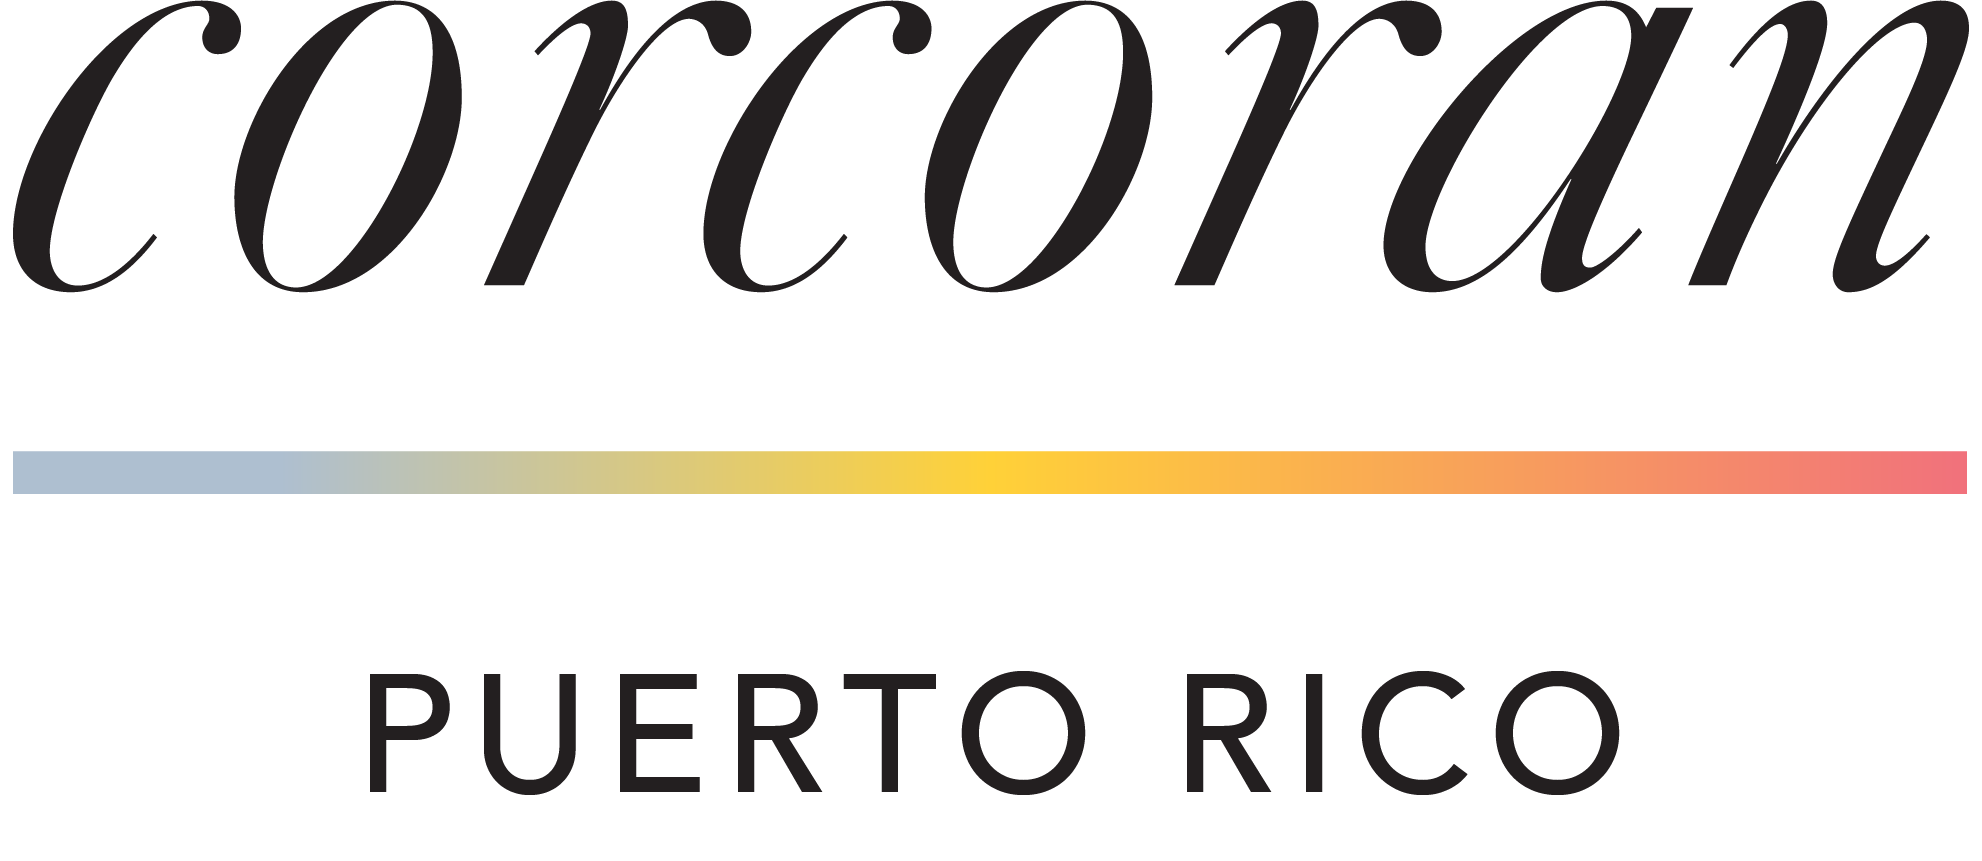 Corcoran Puerto Rico logo